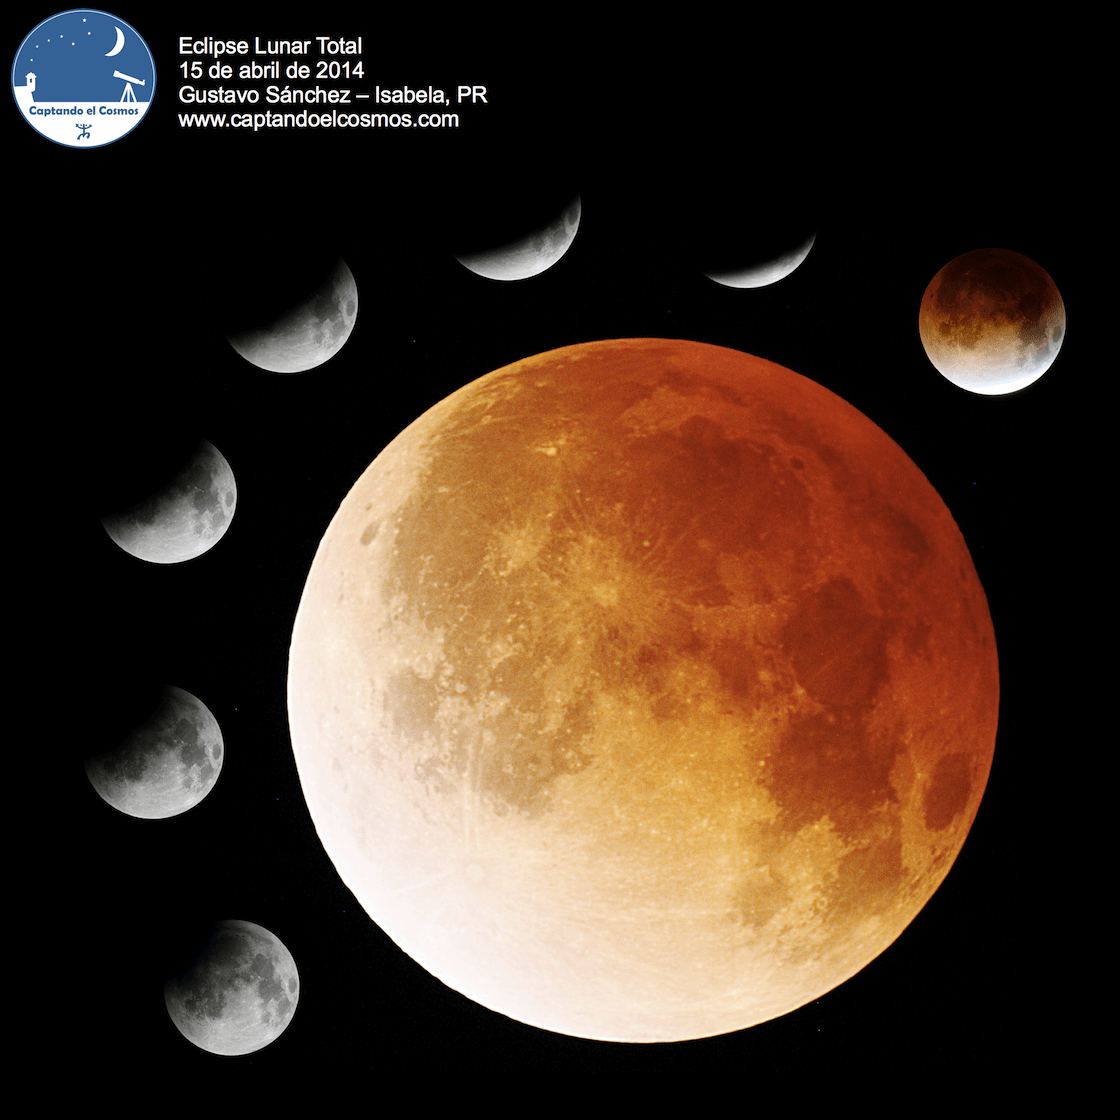 Mosaico de imágenes del eclipse lunar visto desde Isabela, PR. Crédito: Gustavo Sánchez/Captando el Cosmos.